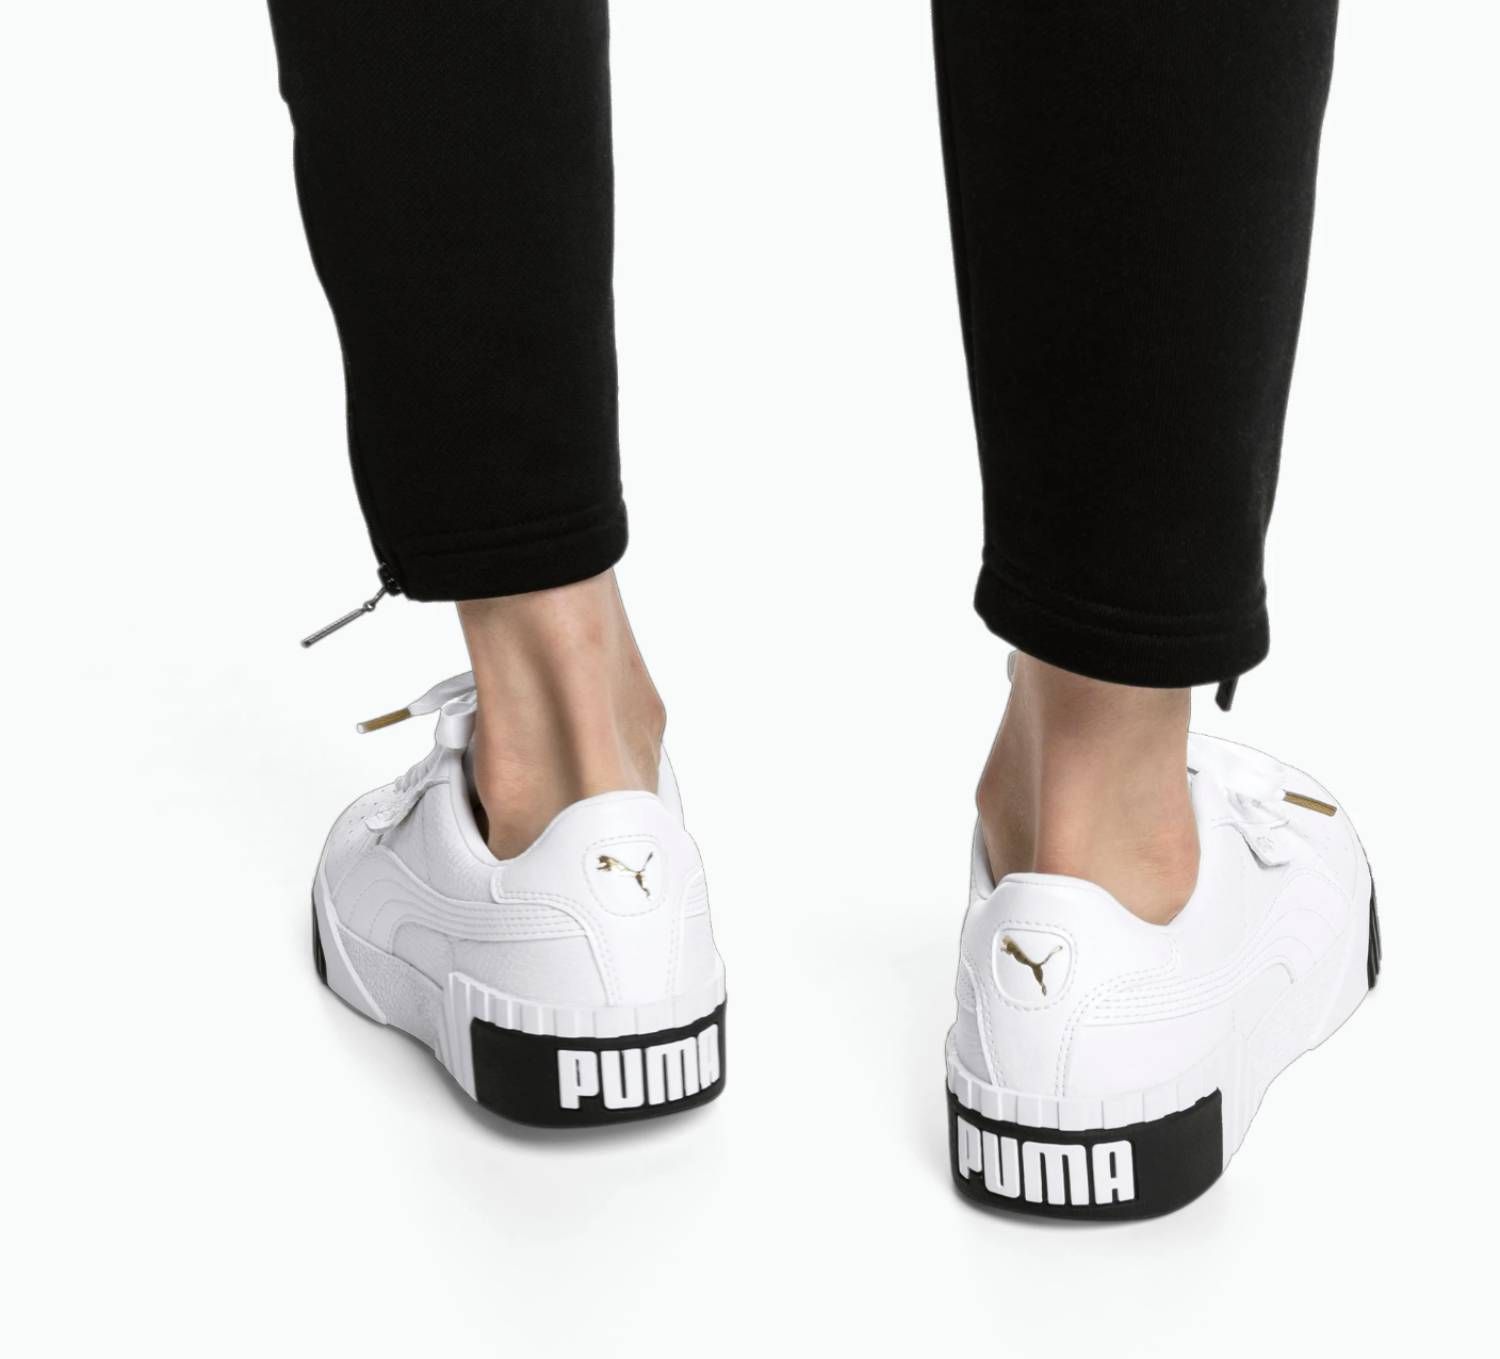 leninismo si líquido Amazon rebaja las zapatillas más top de Puma por Black Friday